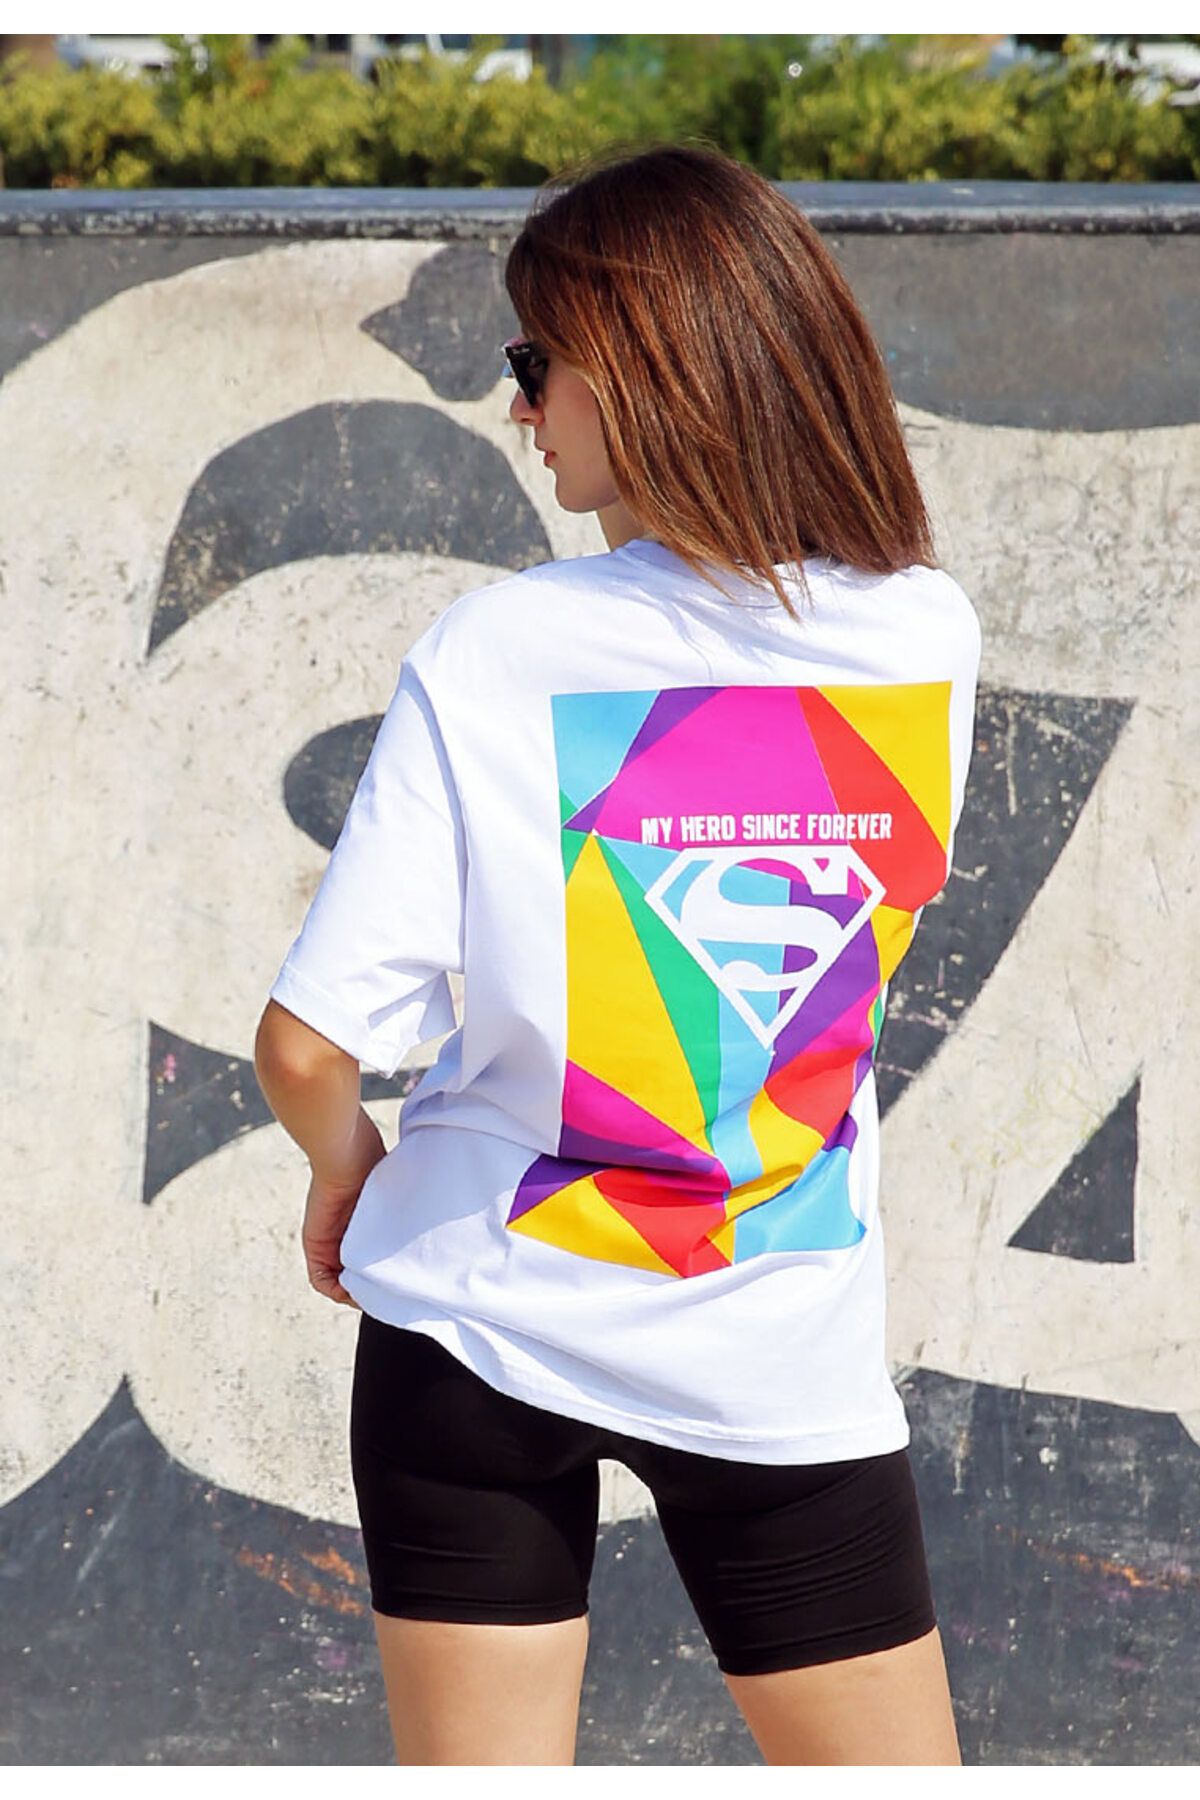 Dogo Unisex Vegan Beyaz T-Shirt - Warner Bros My Hero Since Forever Superman Tasarım